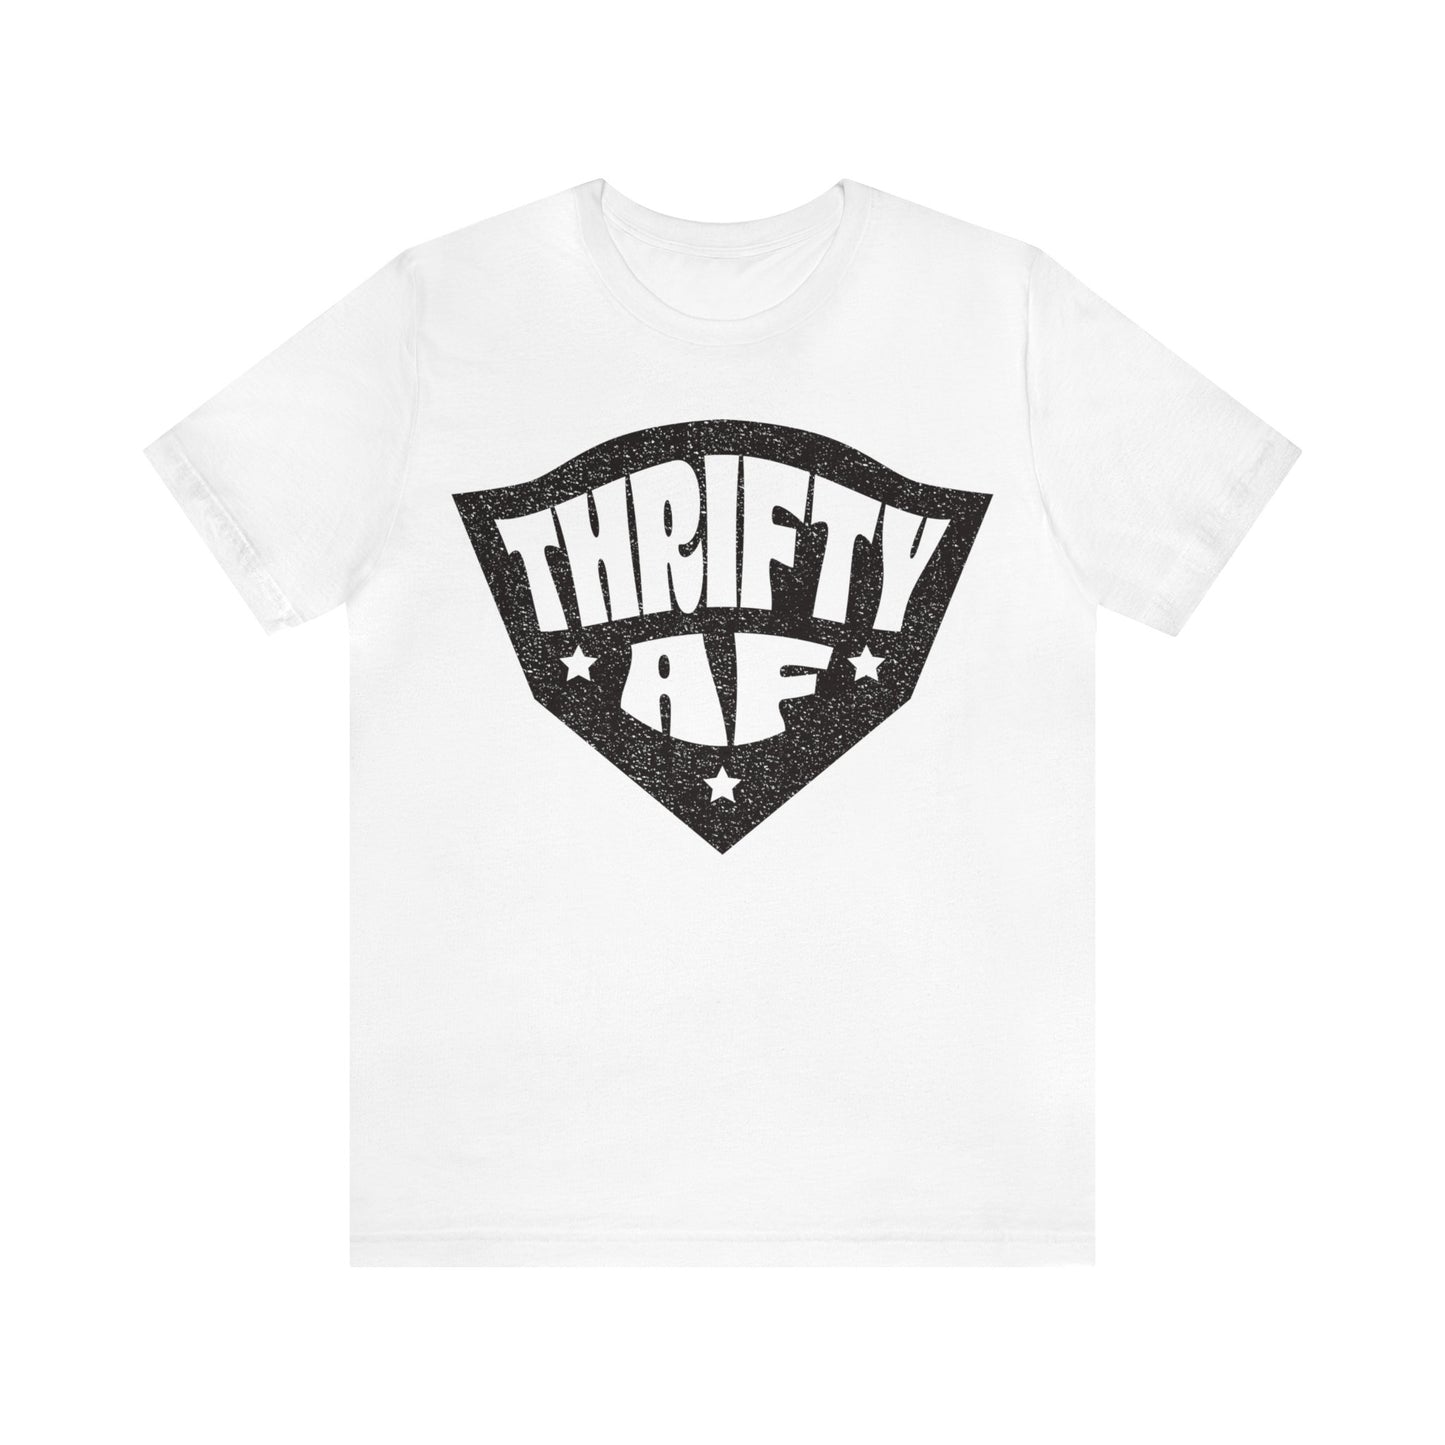 Thrifty AF Premium T-Shirt, Garage Sales, Home Made, Thrift Stores, Flea Markets, Antiques, Junkin' Genius